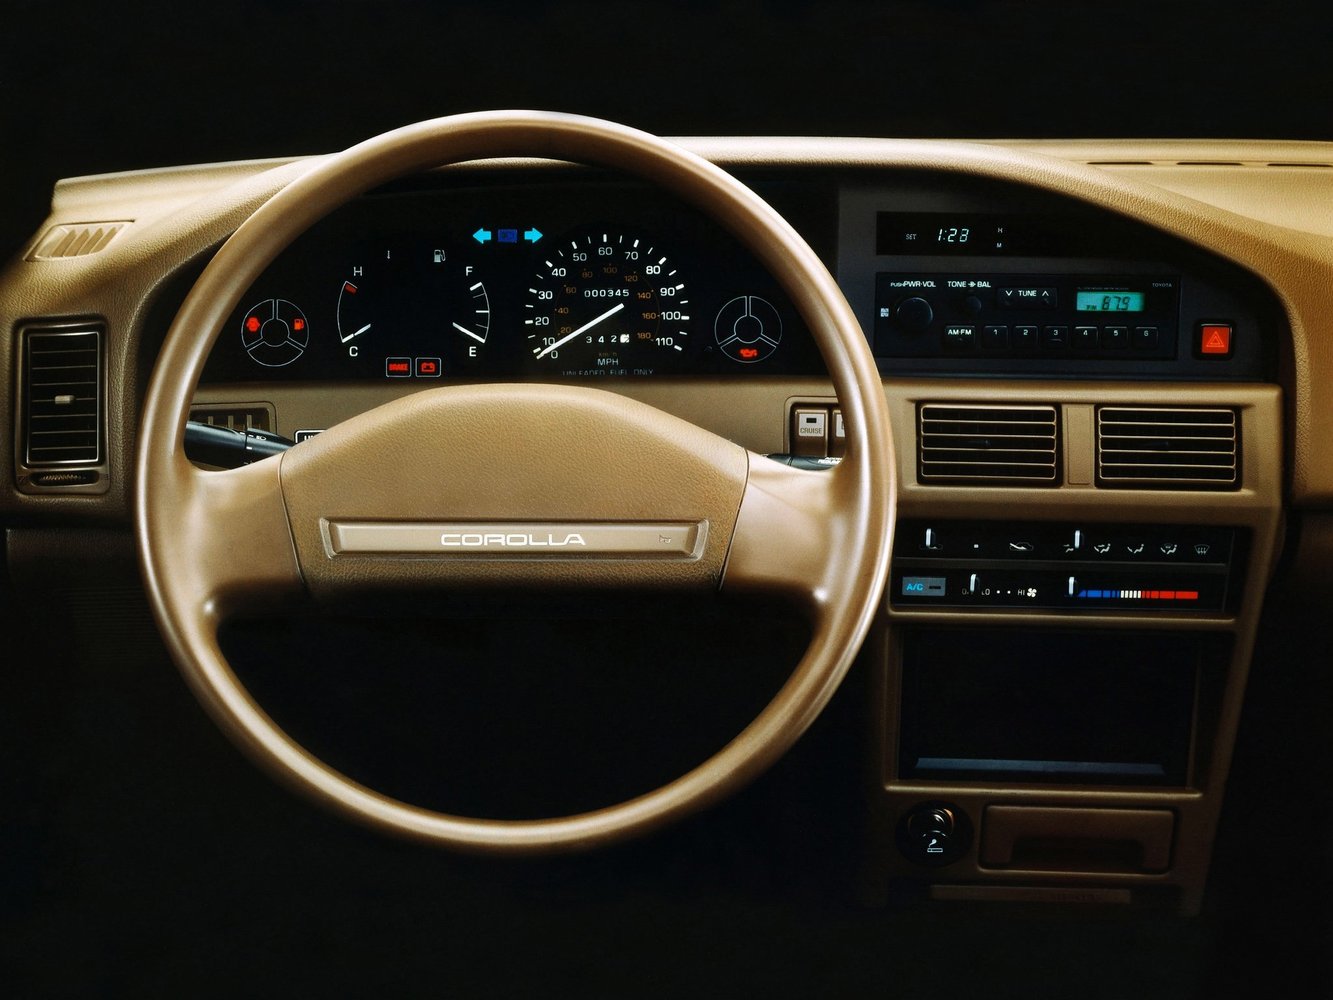 седан Toyota Corolla 1987 - 1991г выпуска модификация 1.3 AT (75 л.с.)